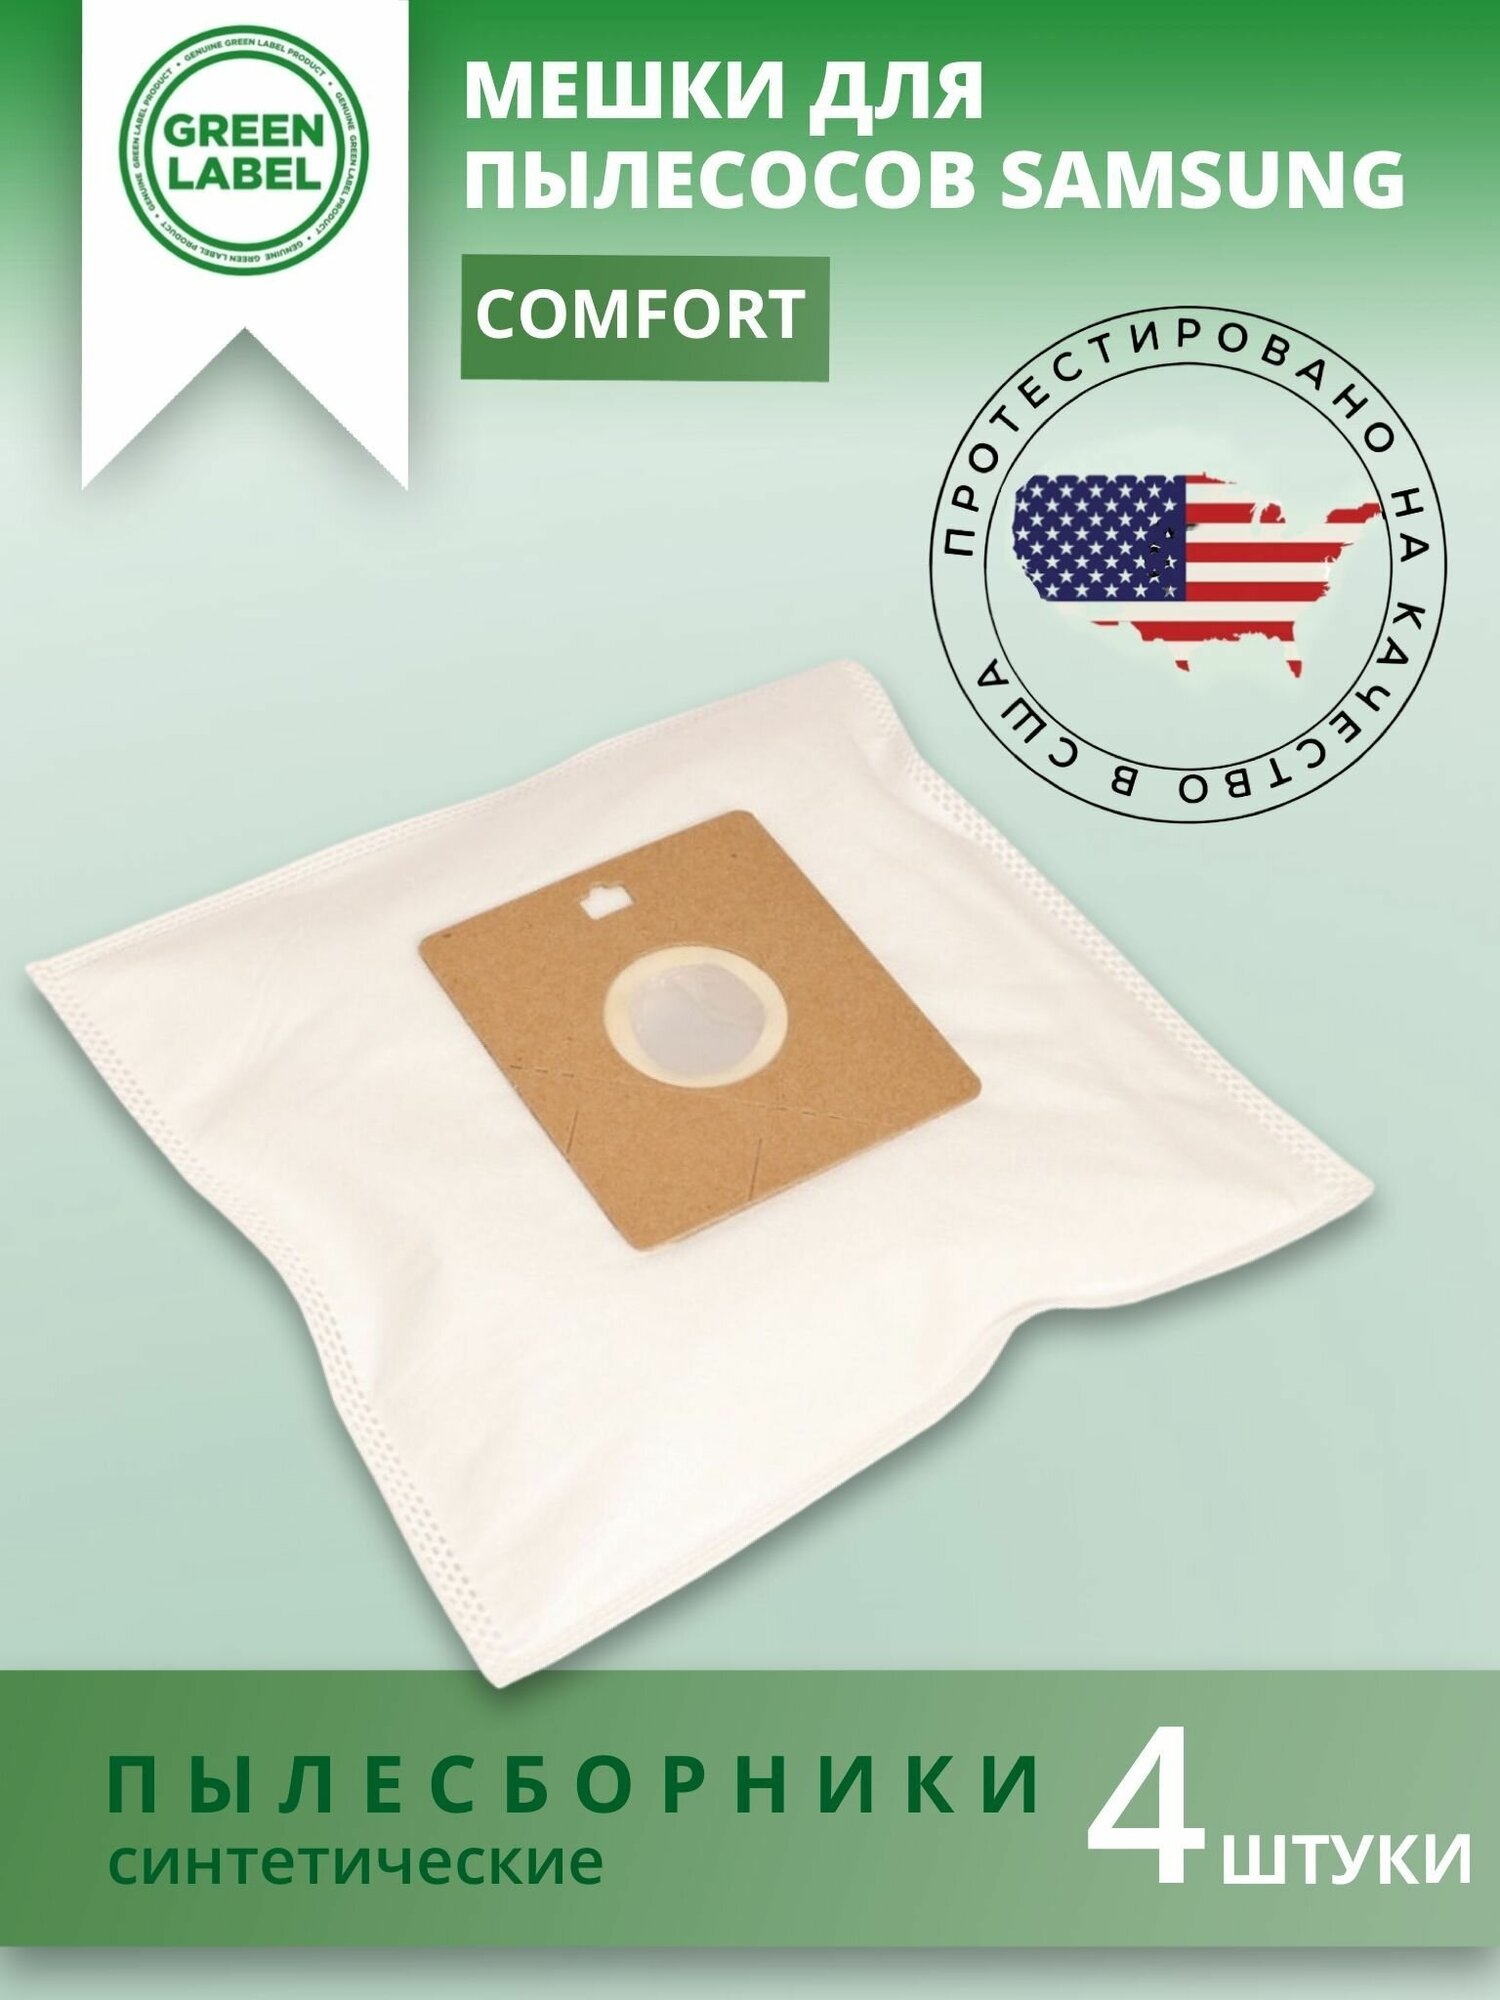 Green Label, Пылесборники 4 шт. для SAMSUNG Comfort, мешки для пылесоса Самсунг тип VP-95B